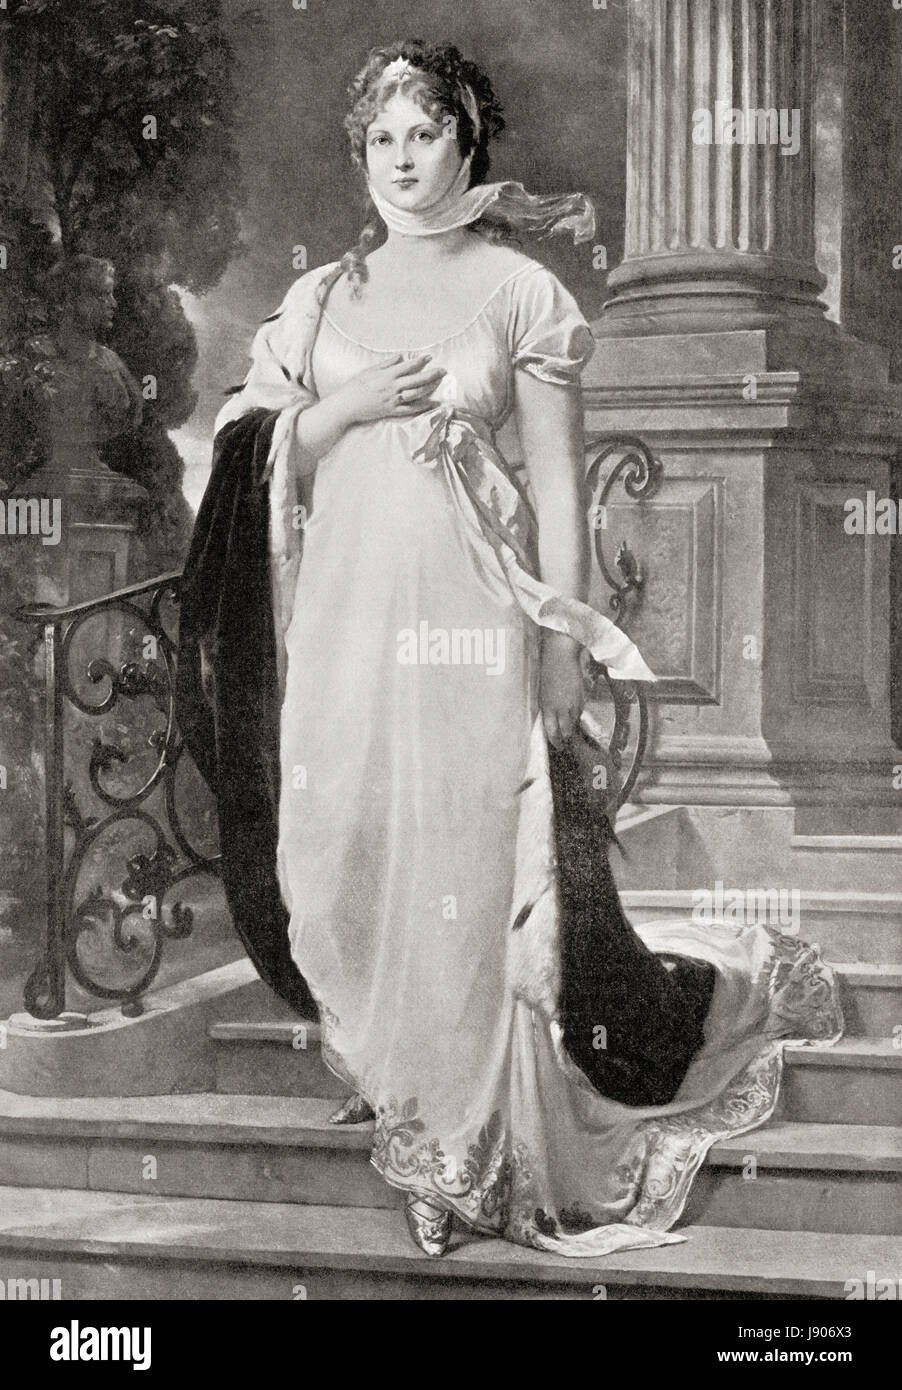 Herzogin Luise von Mecklenburg-Strelitz, 1776-1810. Queen Consort von Preußen als die Frau von König Frederick William III.  Hutchinson Geschichte der Nationen veröffentlichte 1915. Stockfoto